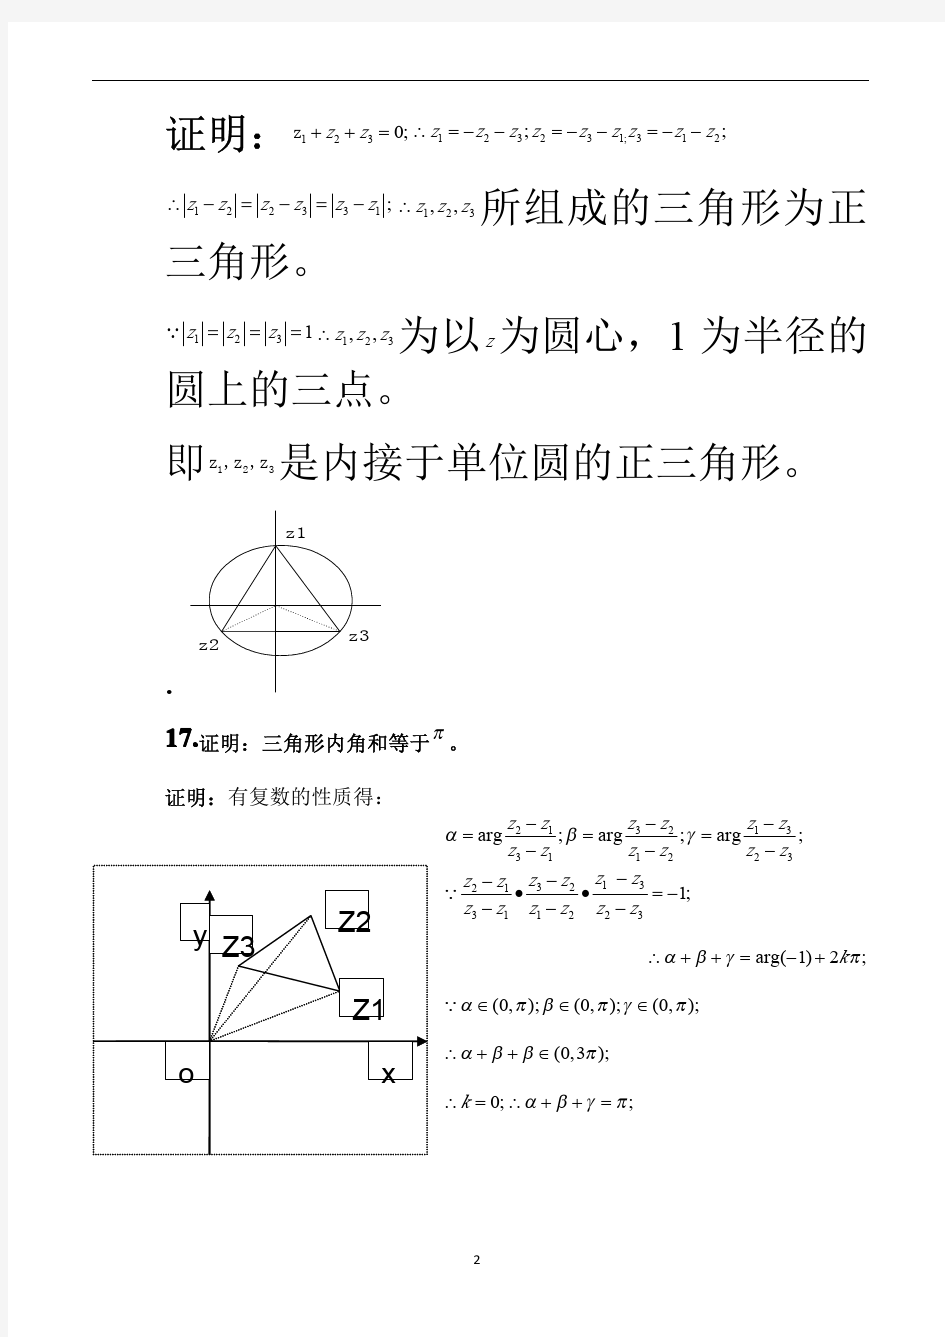 高等数学第四册第三版数学物理方法答案(完整版)